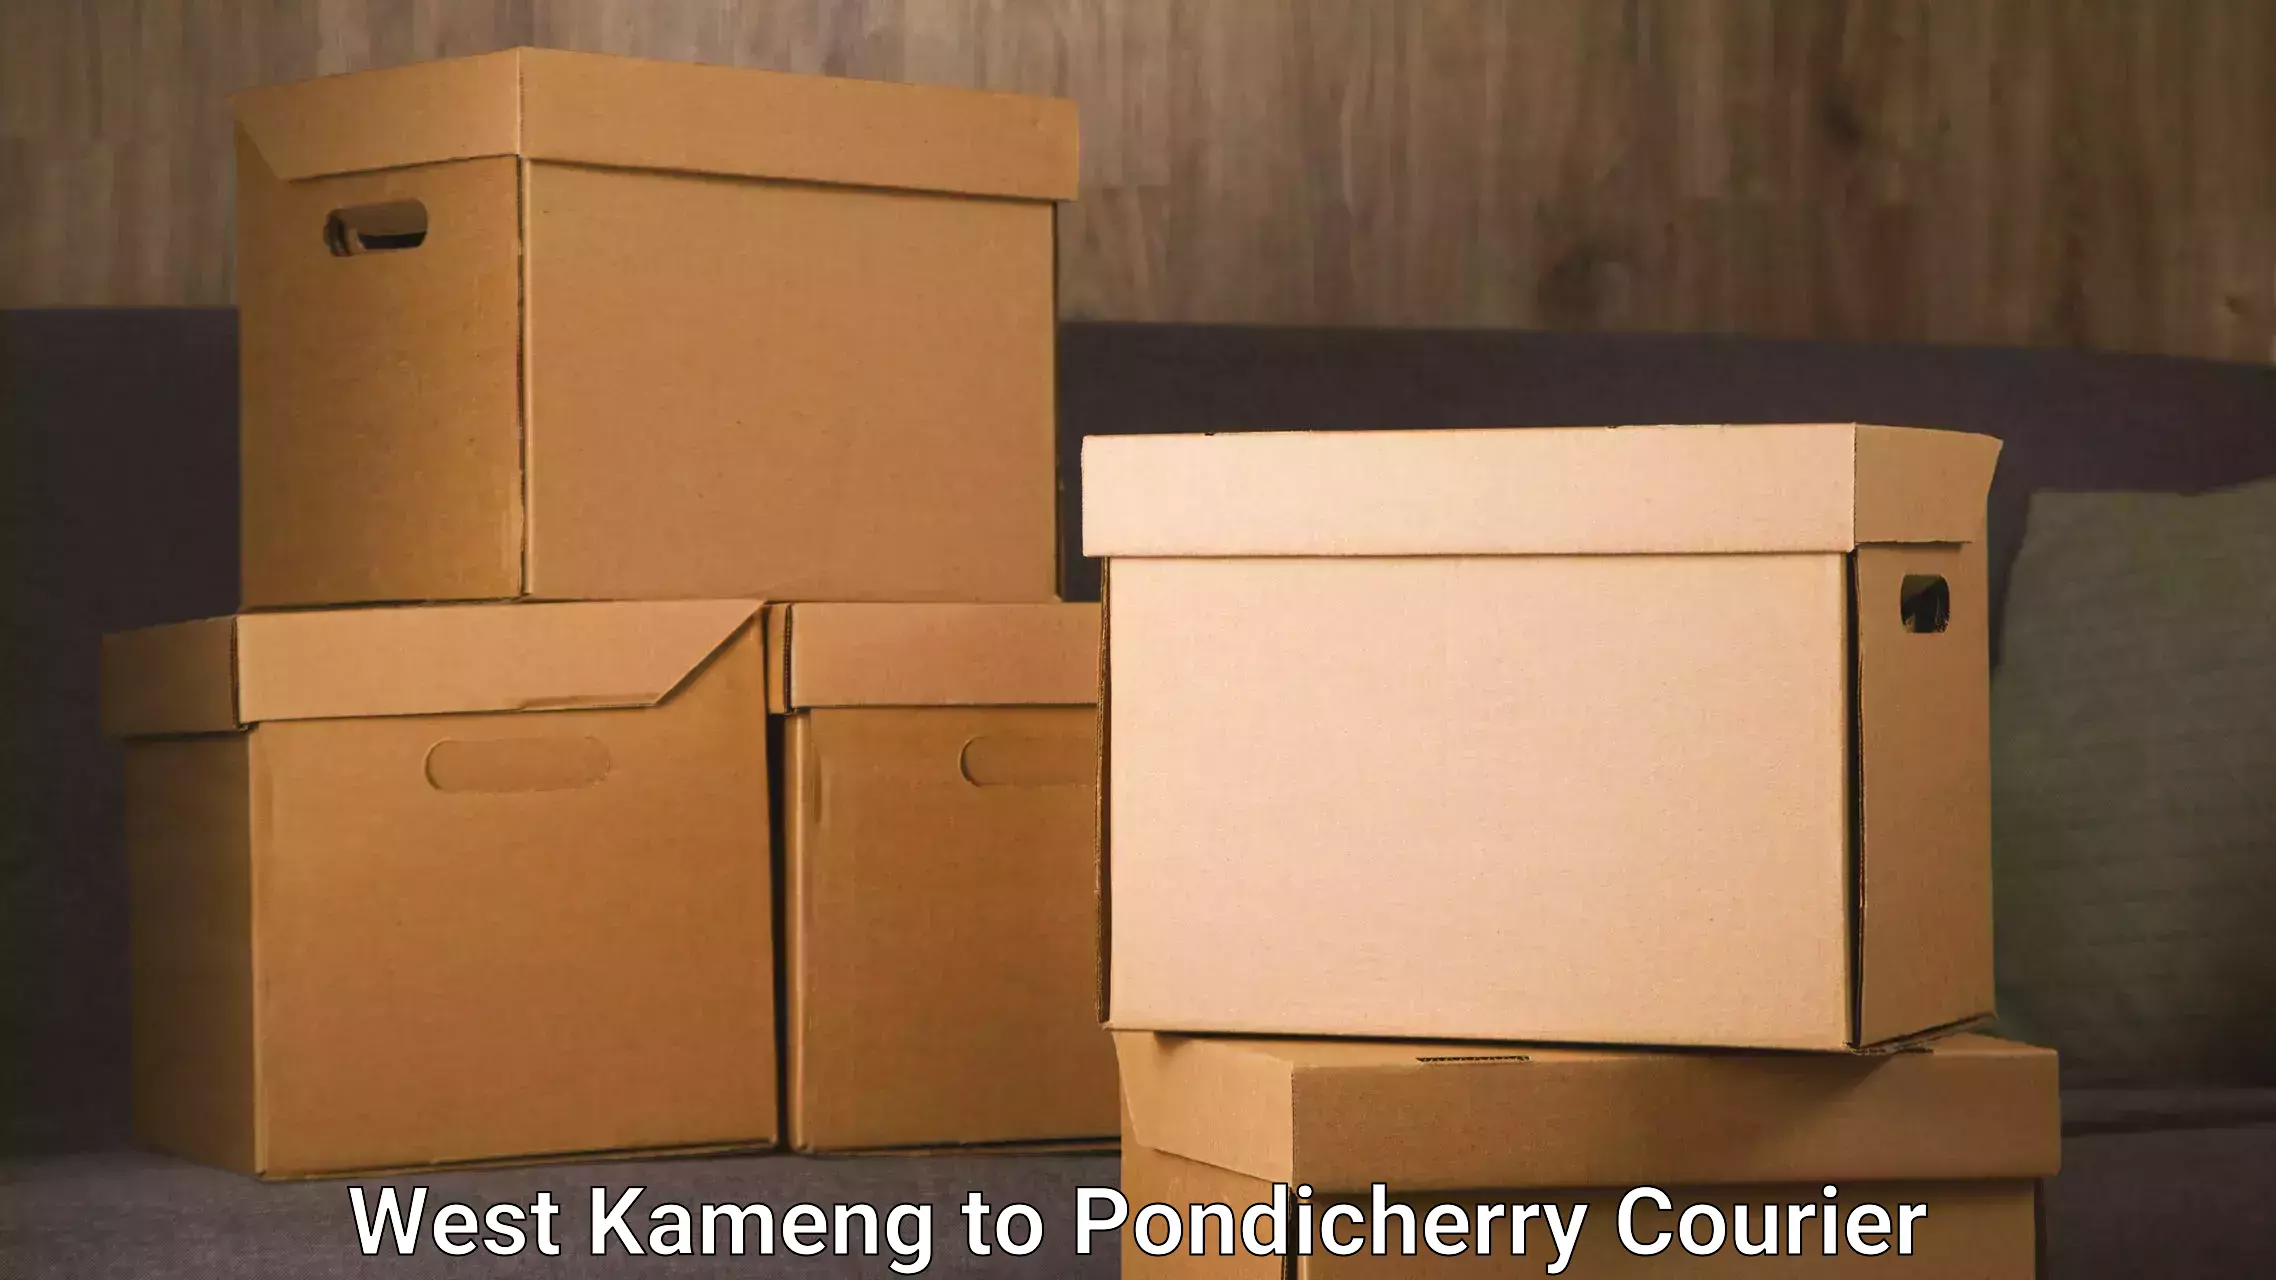 Express logistics service West Kameng to Pondicherry